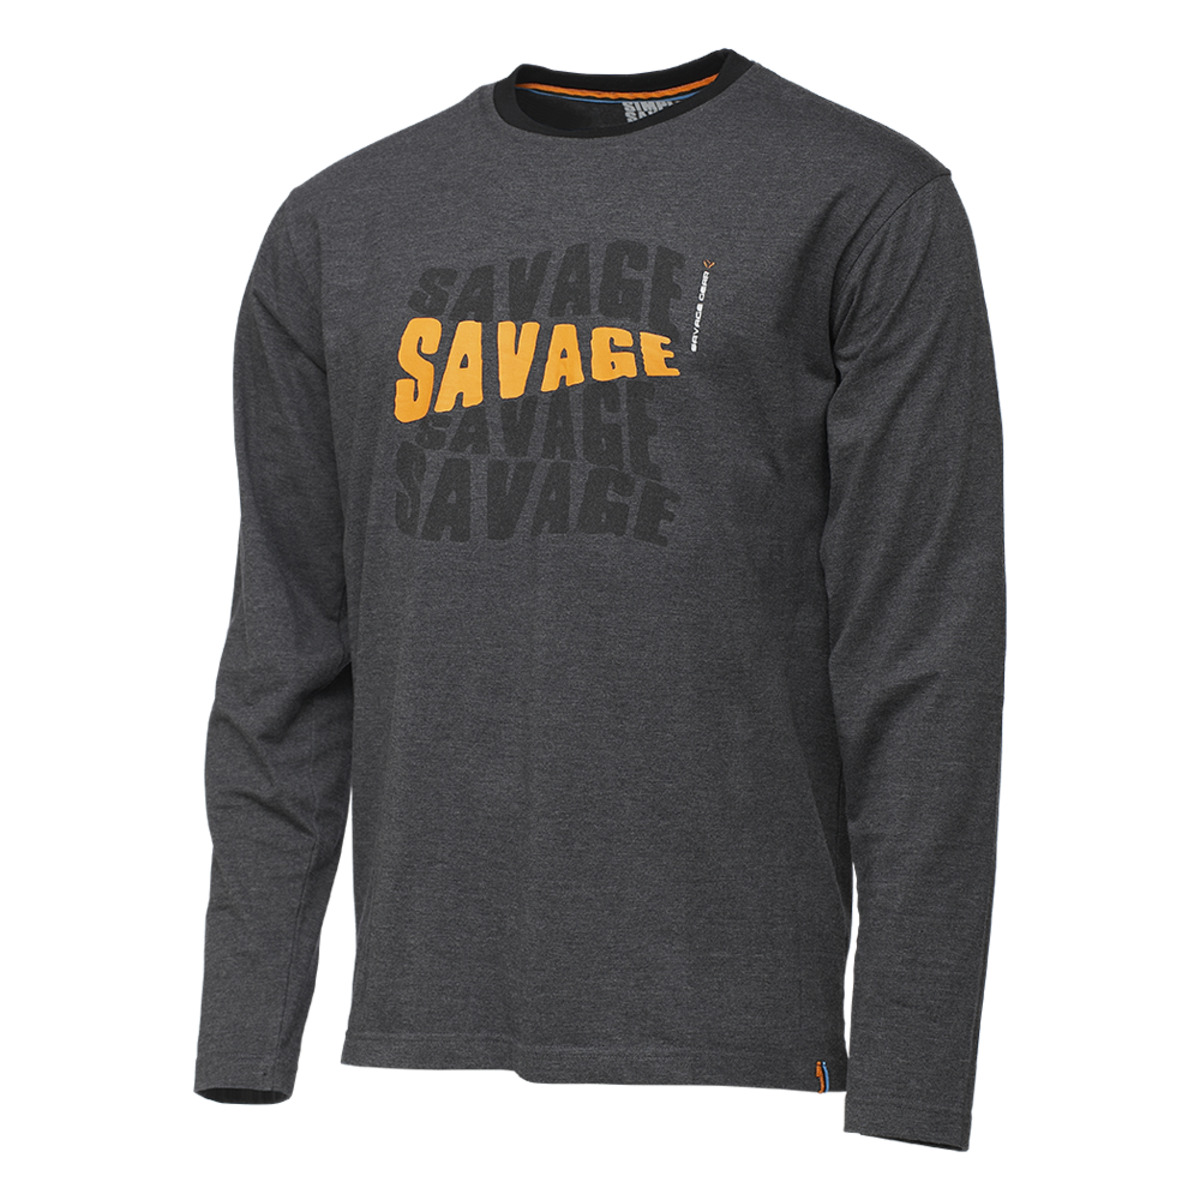 Savage Gear Simply Savage Logo Tee Long Sleeve - XL DARK GREY MELANGE